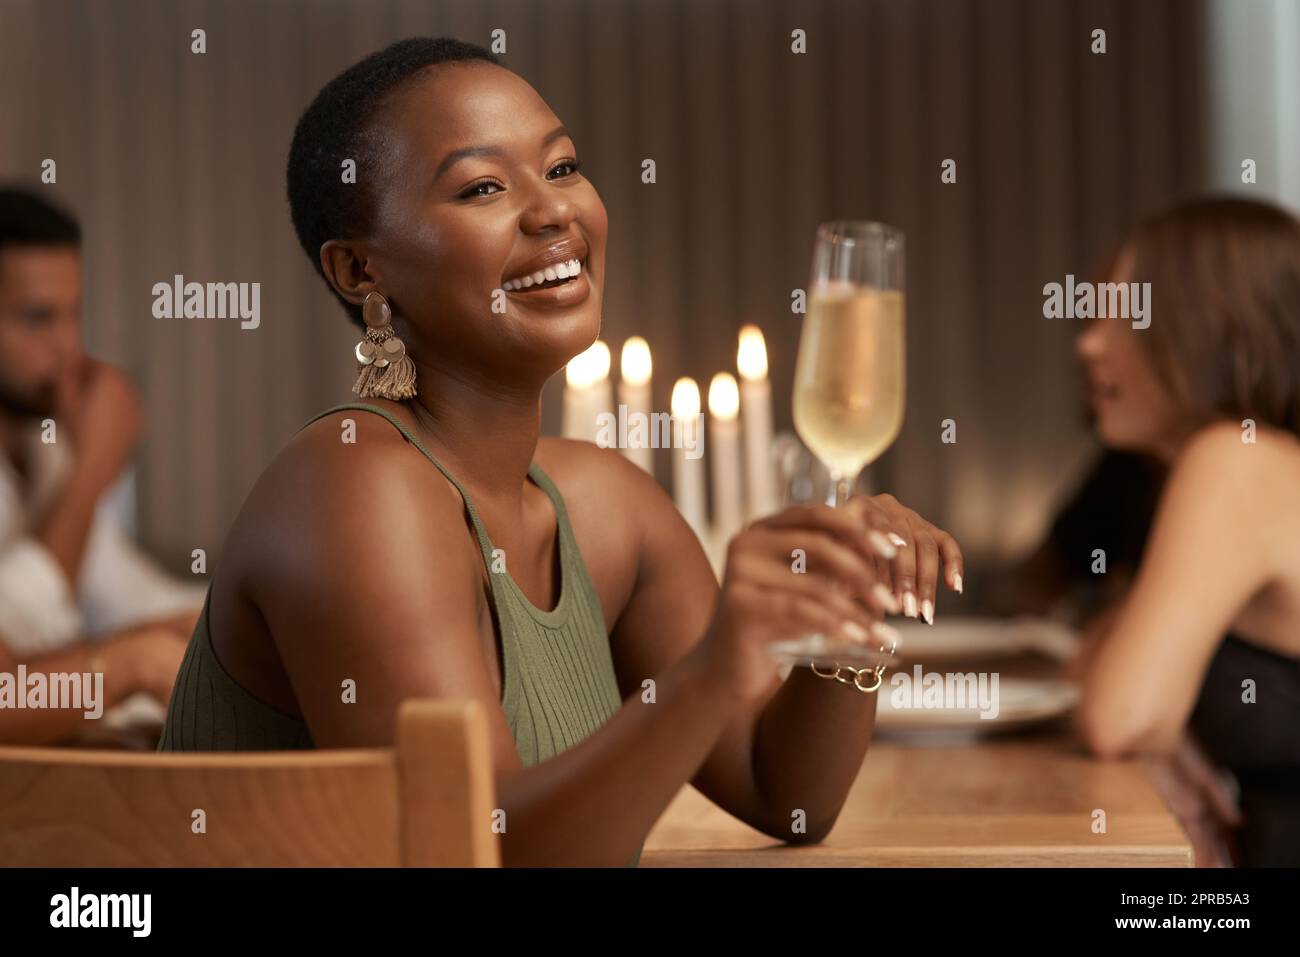 Cette bonne humeur a été parrainée par Bubbly. Une jeune femme attrayante assise avec ses amis lors d'un dîner et profitant d'un verre de champagne. Banque D'Images